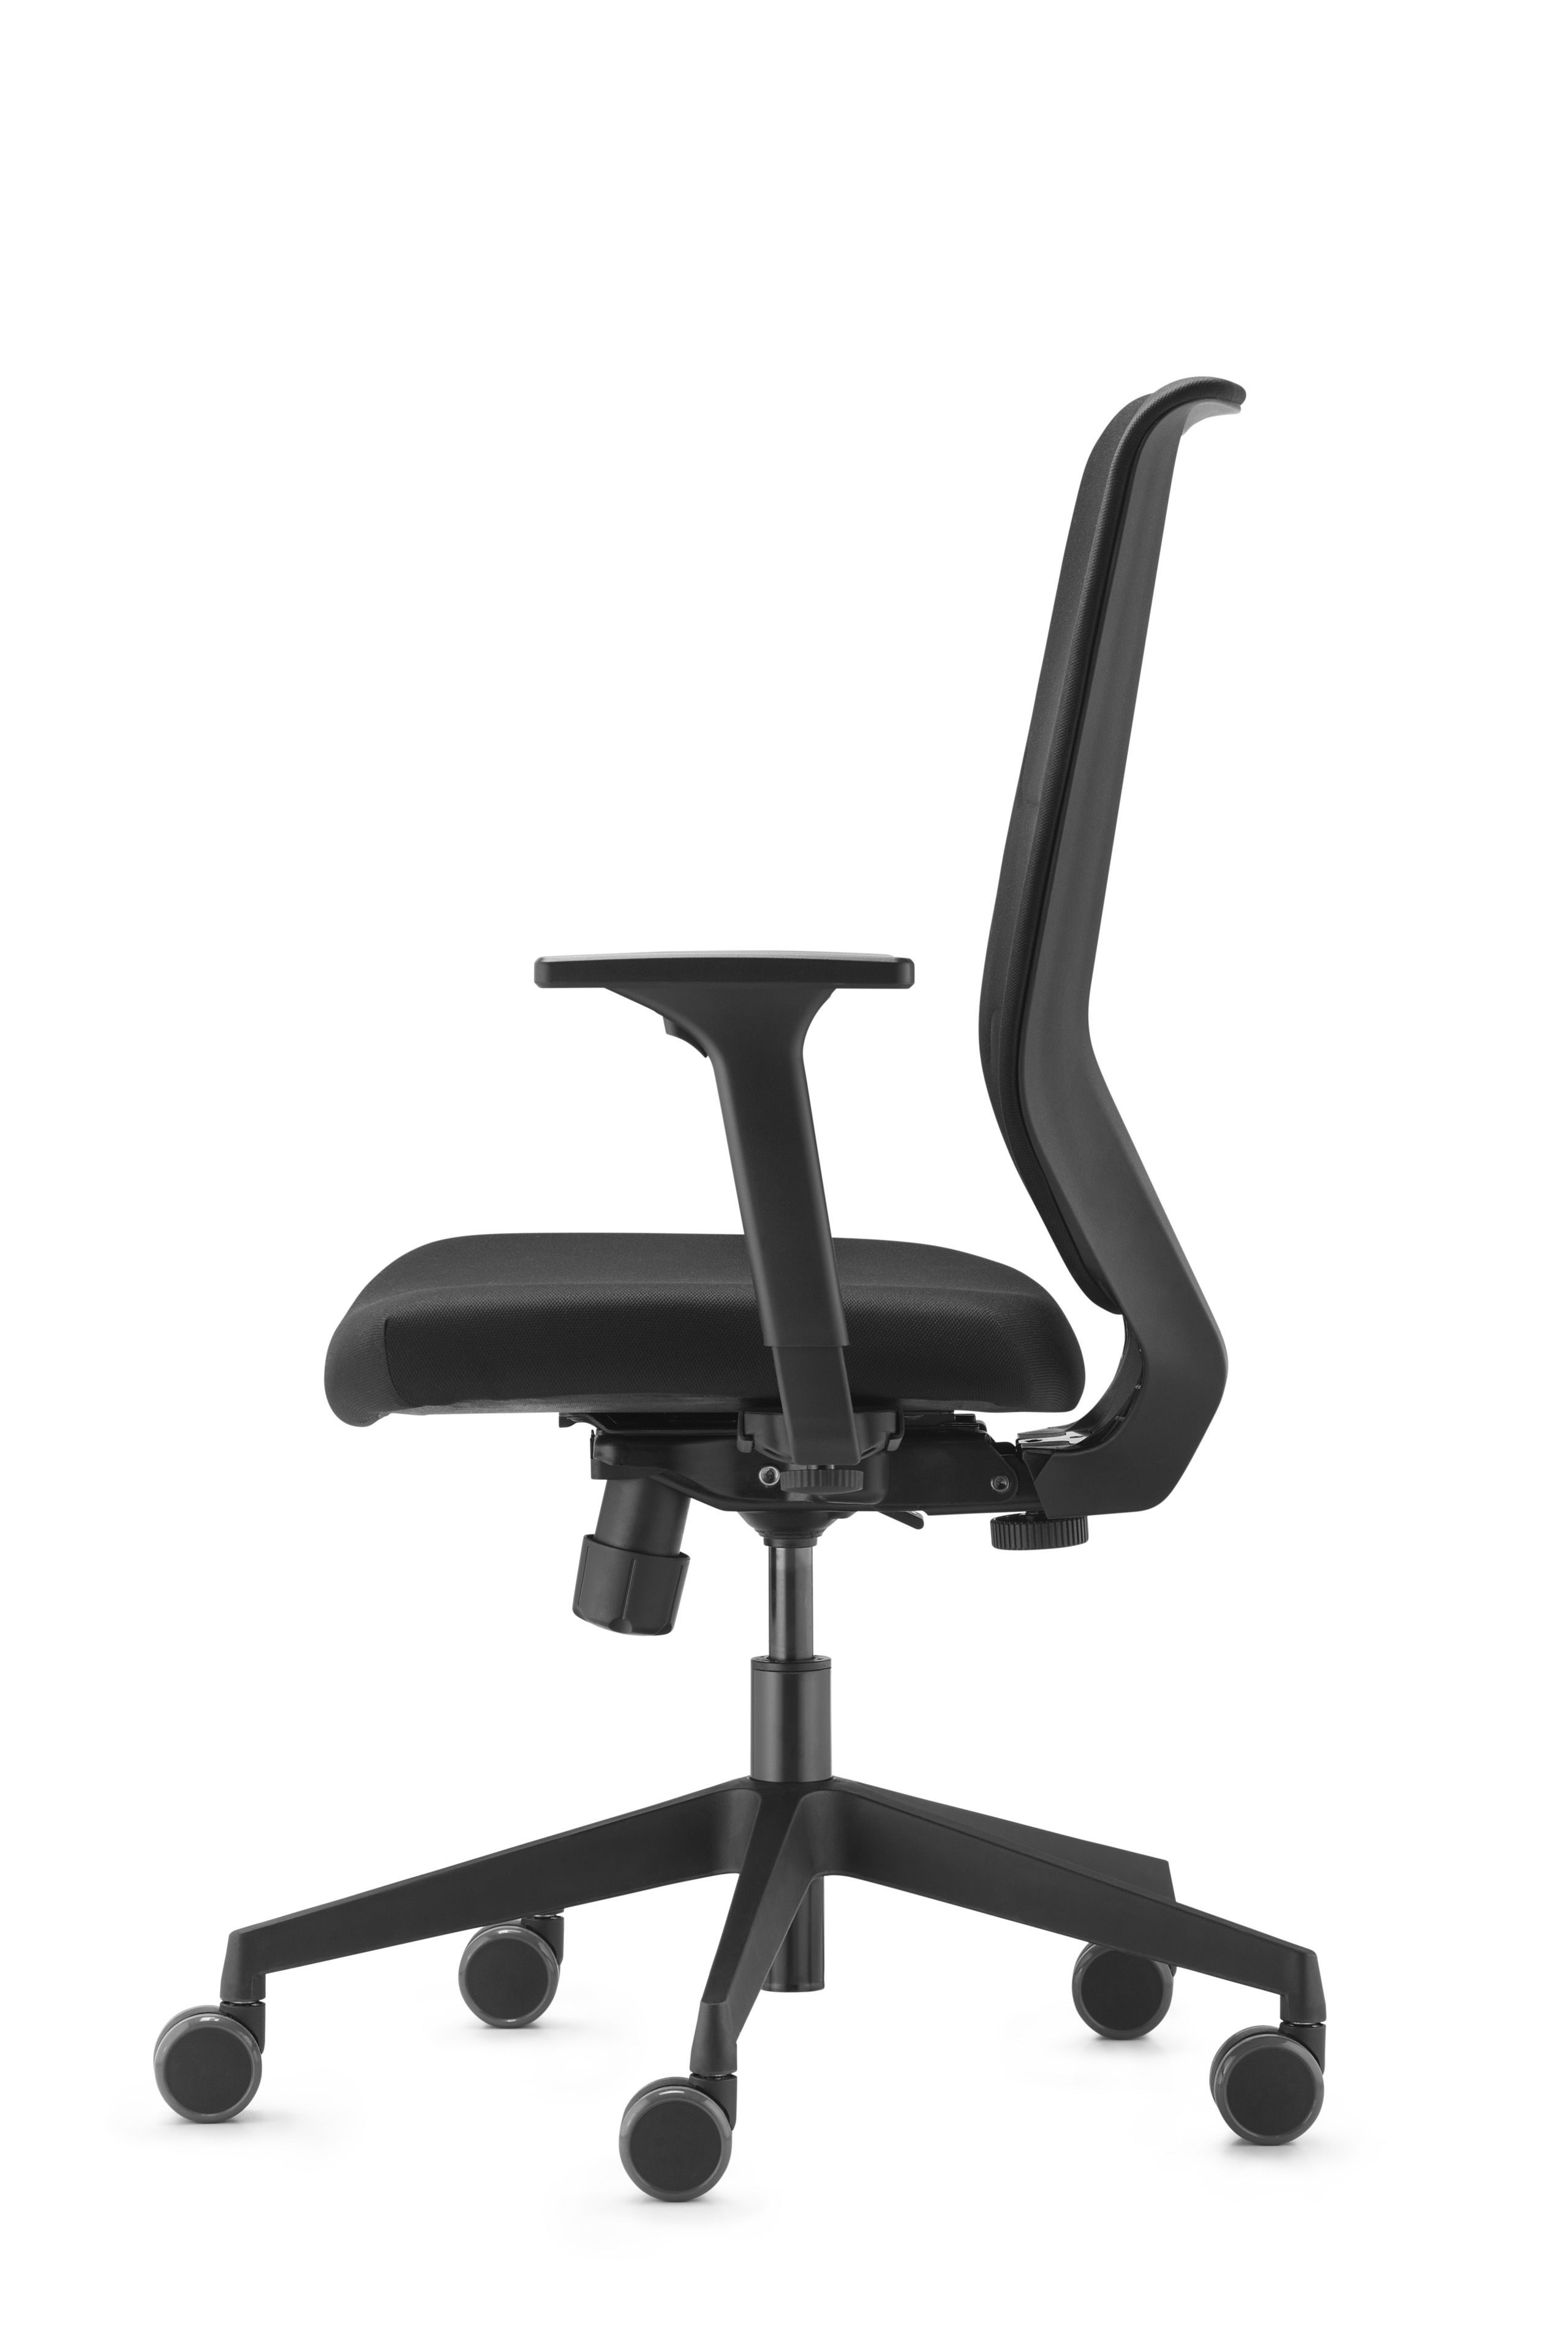 Dauphin bureaustoel to-sync comfort SC 9247